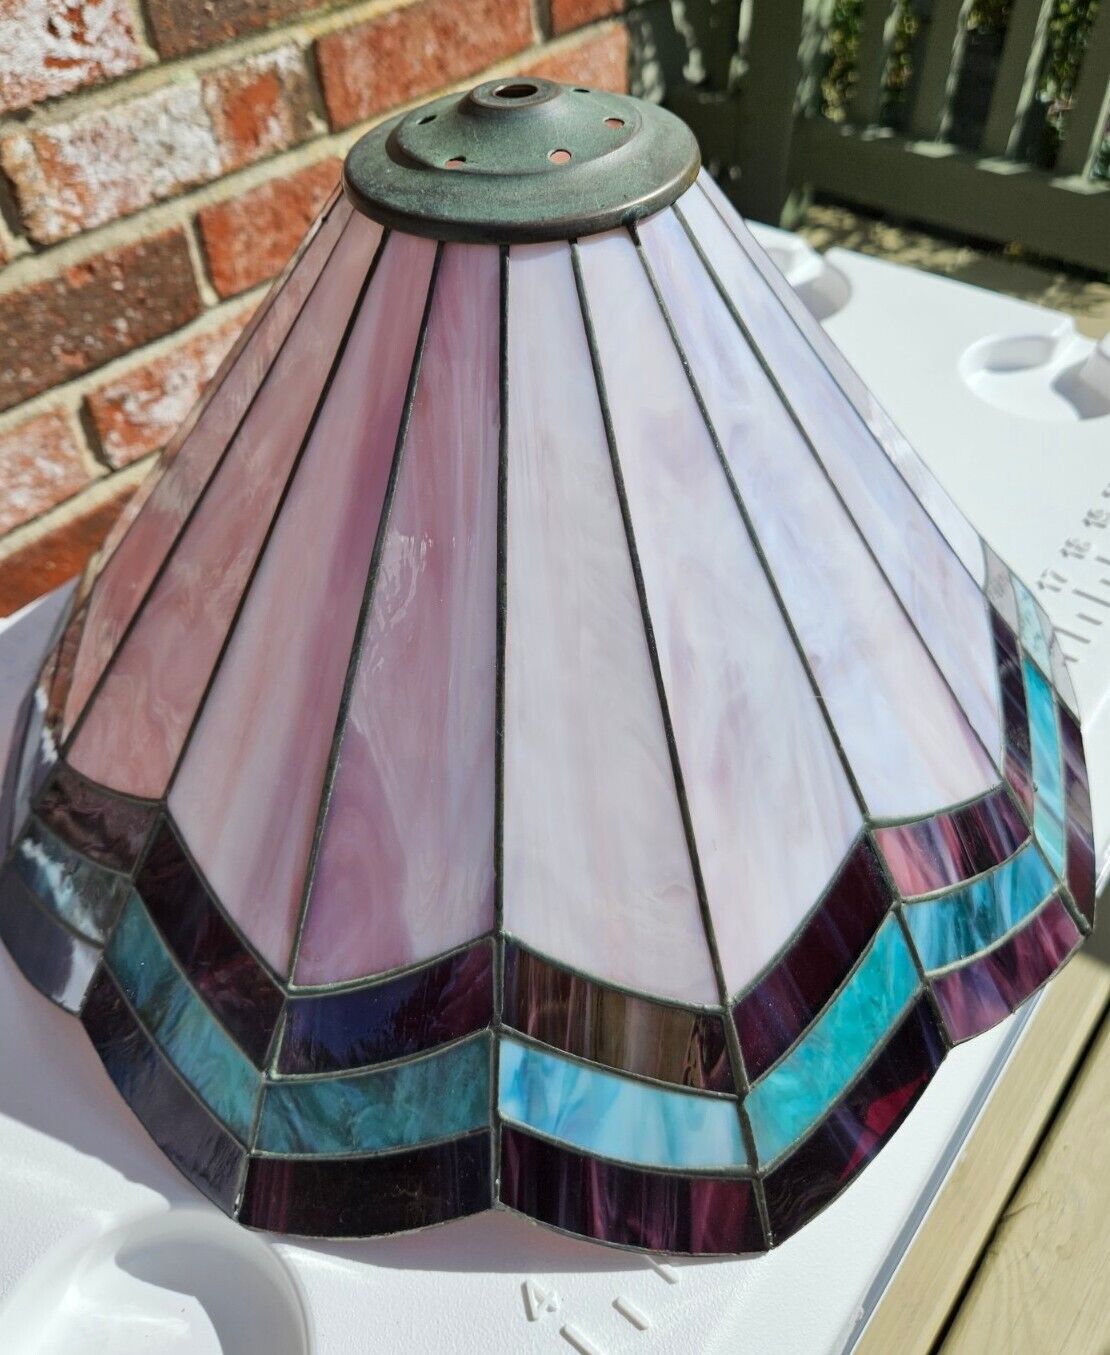 Vtg Leaded Slag Glass Lamp Shade 16 In Diameter Purple Teal Mauve Scalloped Edge